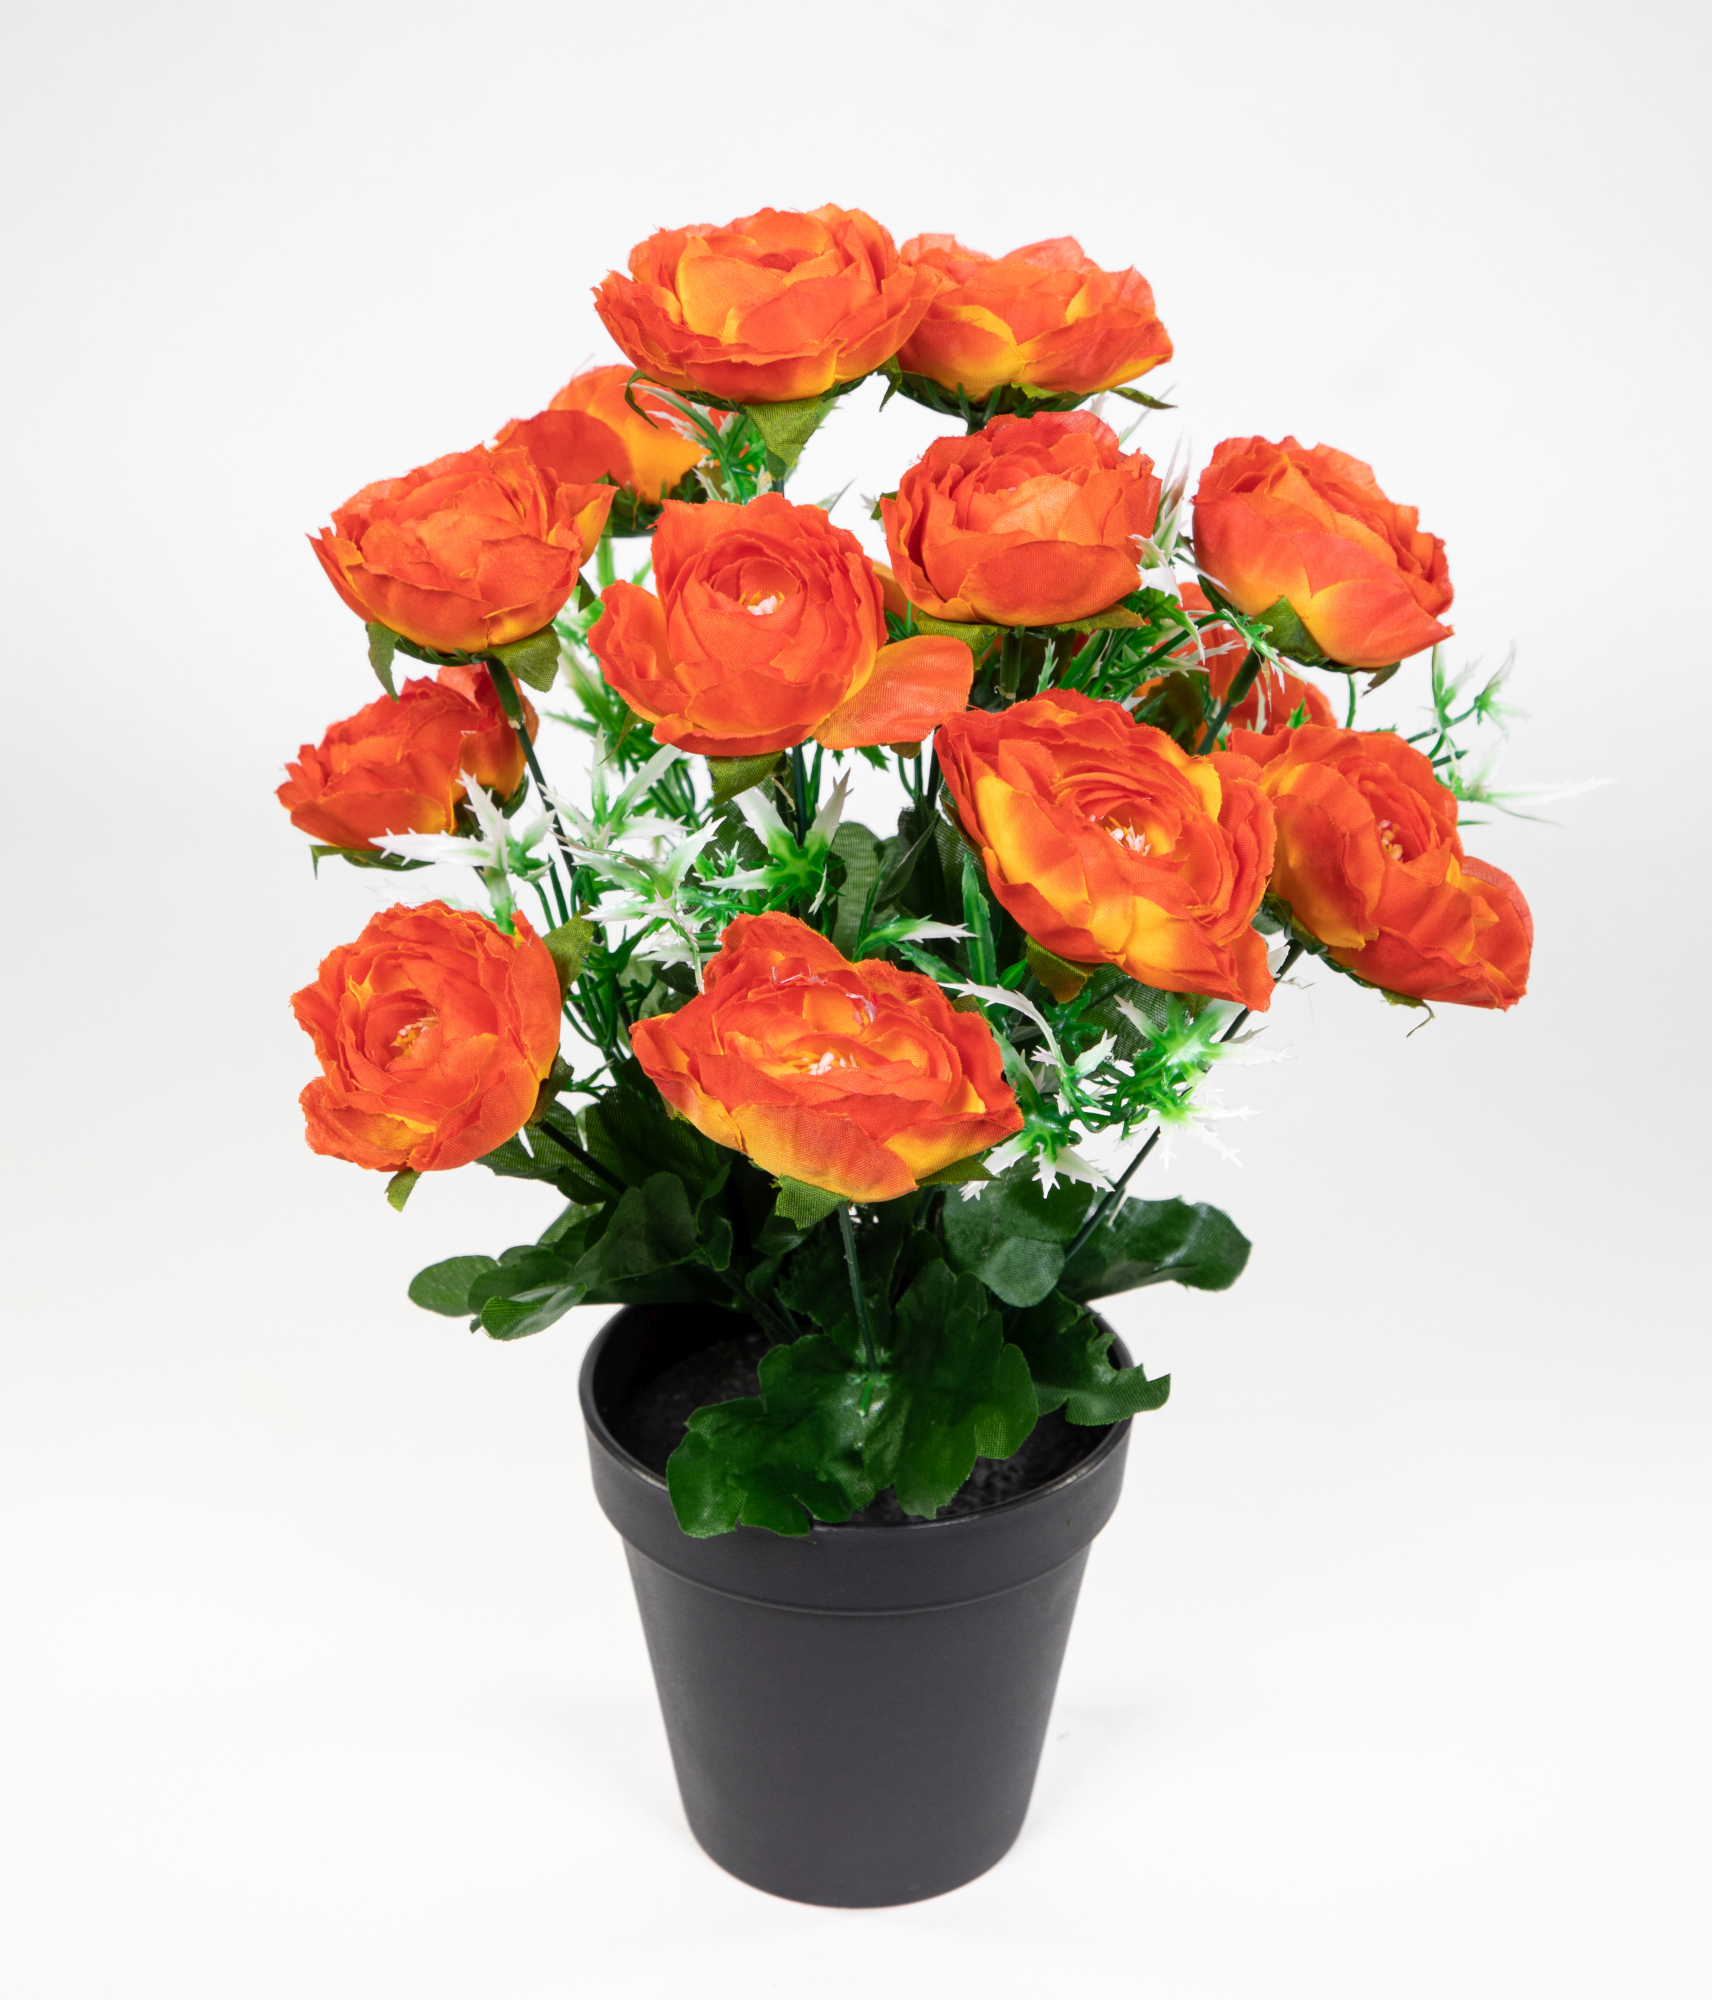 Kunstblumen 34cm Ranunkel im Ranunkelbusch Kunstpflanzen Topf Blumen orange künstliche JA